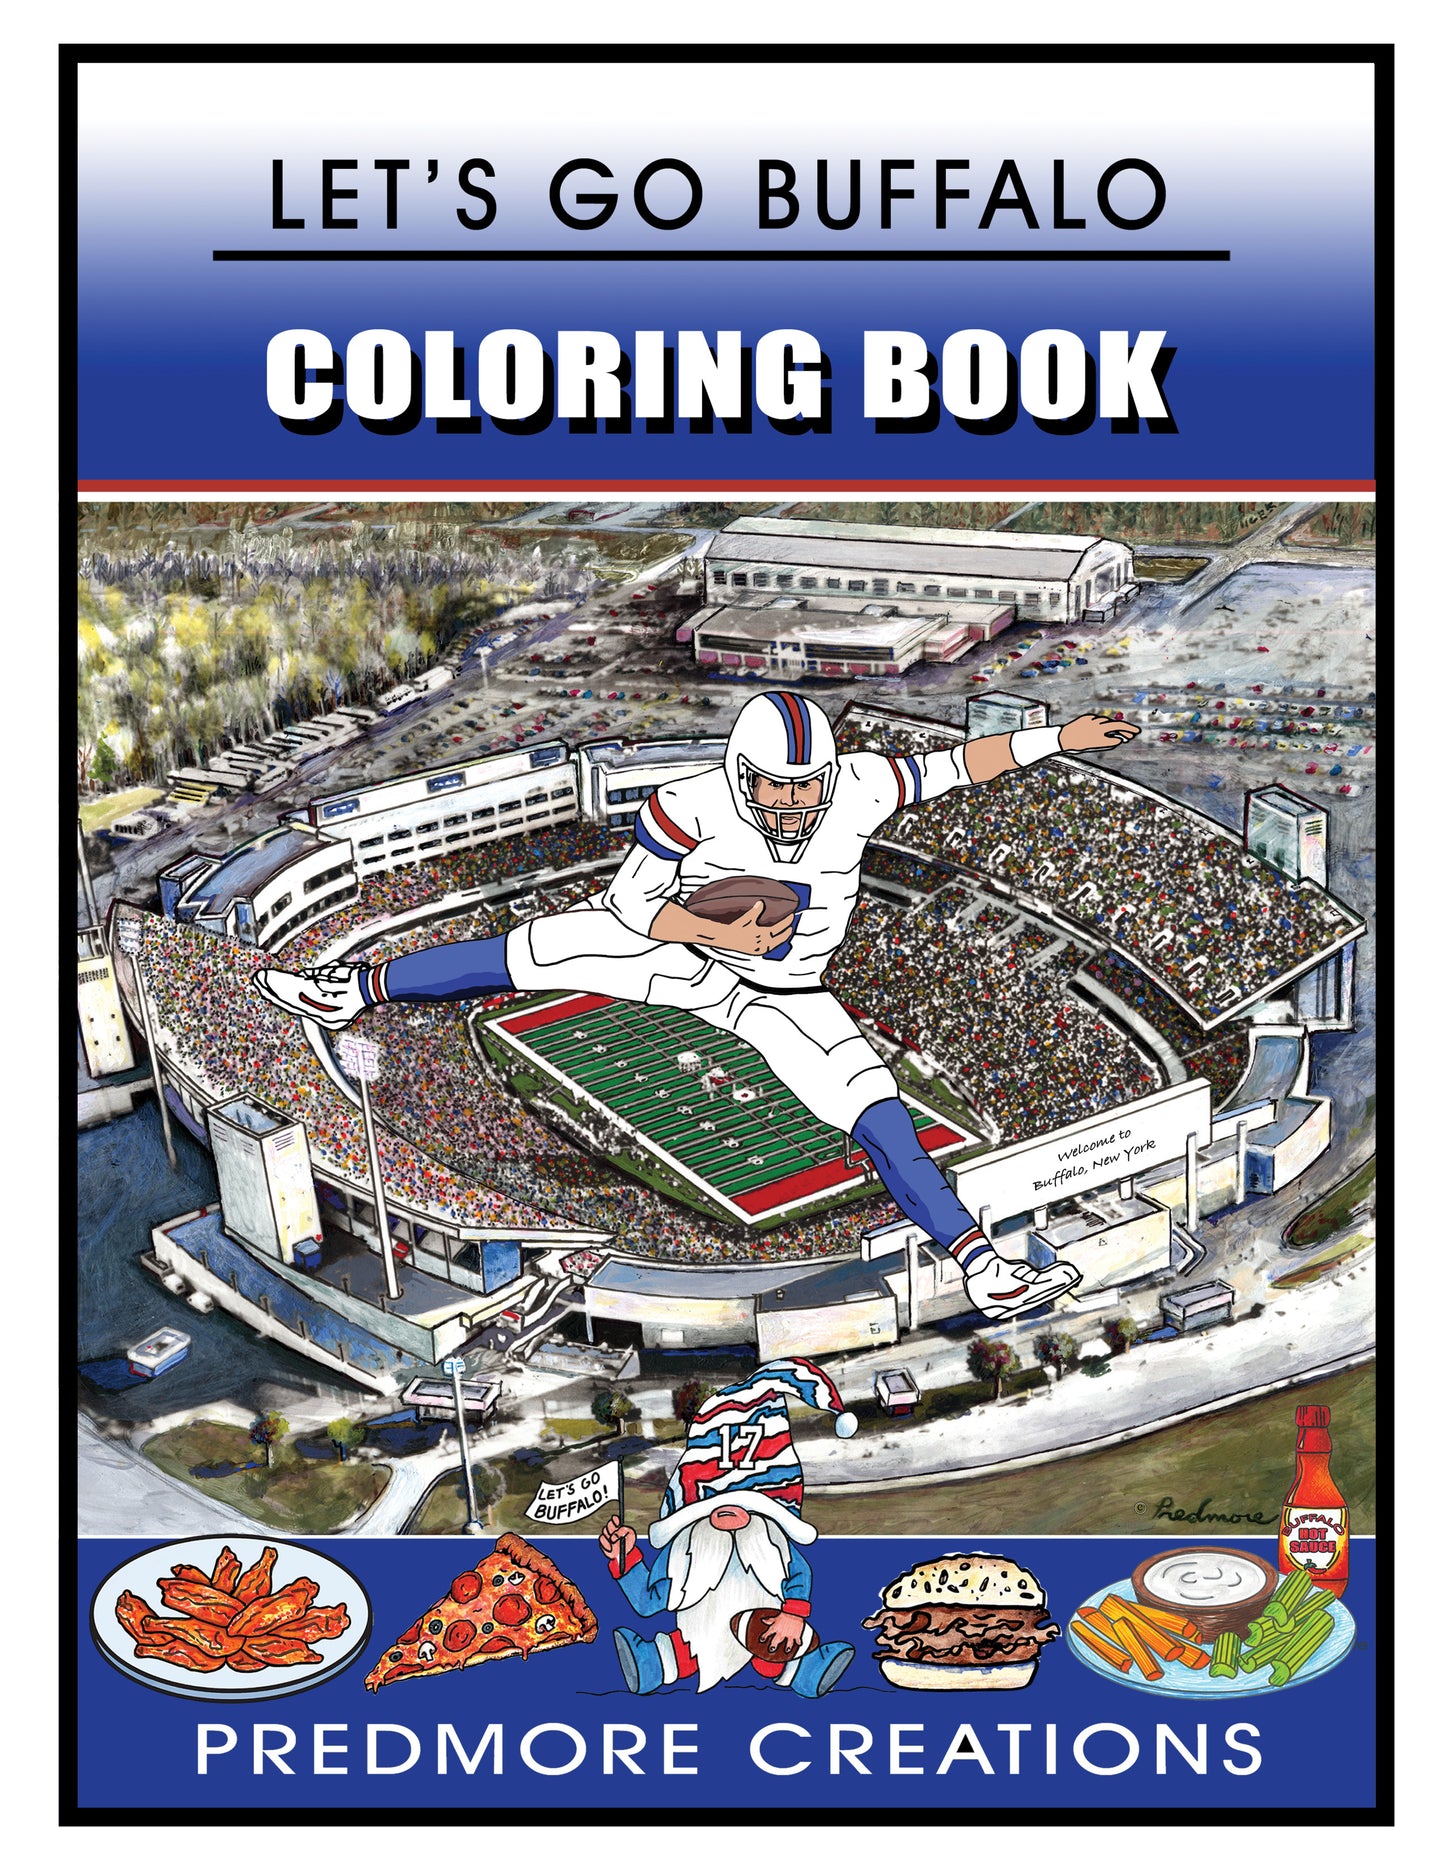 Let’s Go Buffalo Coloring Book